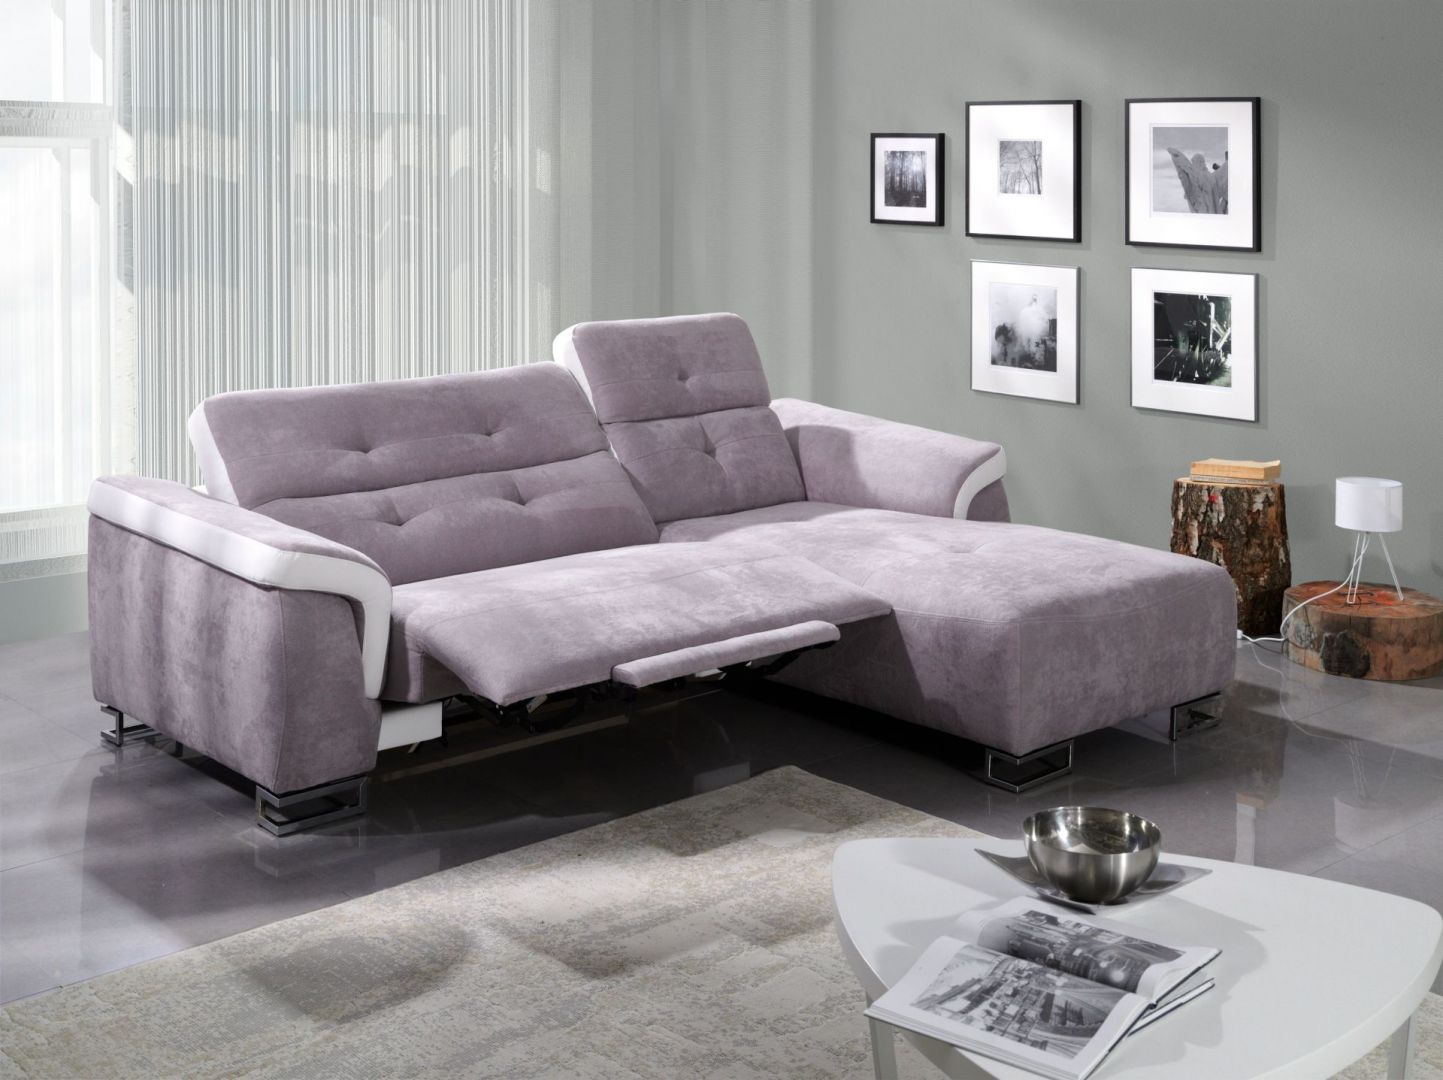 Sofa Amber marki Benix komfortowo się rozkłada, dzięki temu można się na niej wygodnie wypocząć. Cena: ok 4.614 zł. Fot. Benix